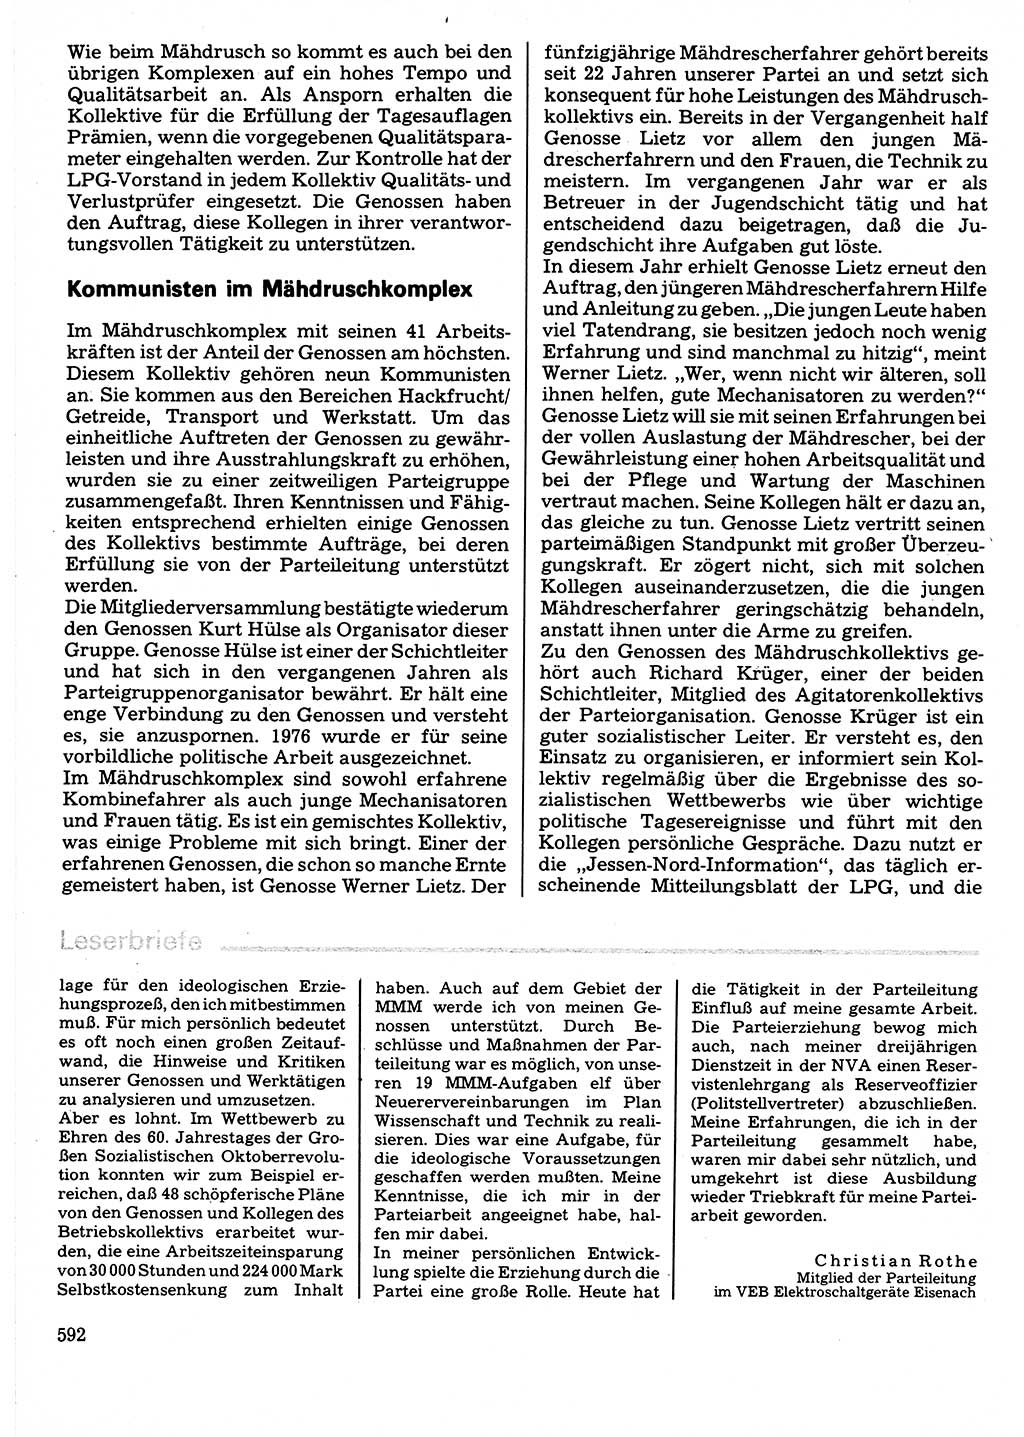 Neuer Weg (NW), Organ des Zentralkomitees (ZK) der SED (Sozialistische Einheitspartei Deutschlands) für Fragen des Parteilebens, 32. Jahrgang [Deutsche Demokratische Republik (DDR)] 1977, Seite 592 (NW ZK SED DDR 1977, S. 592)